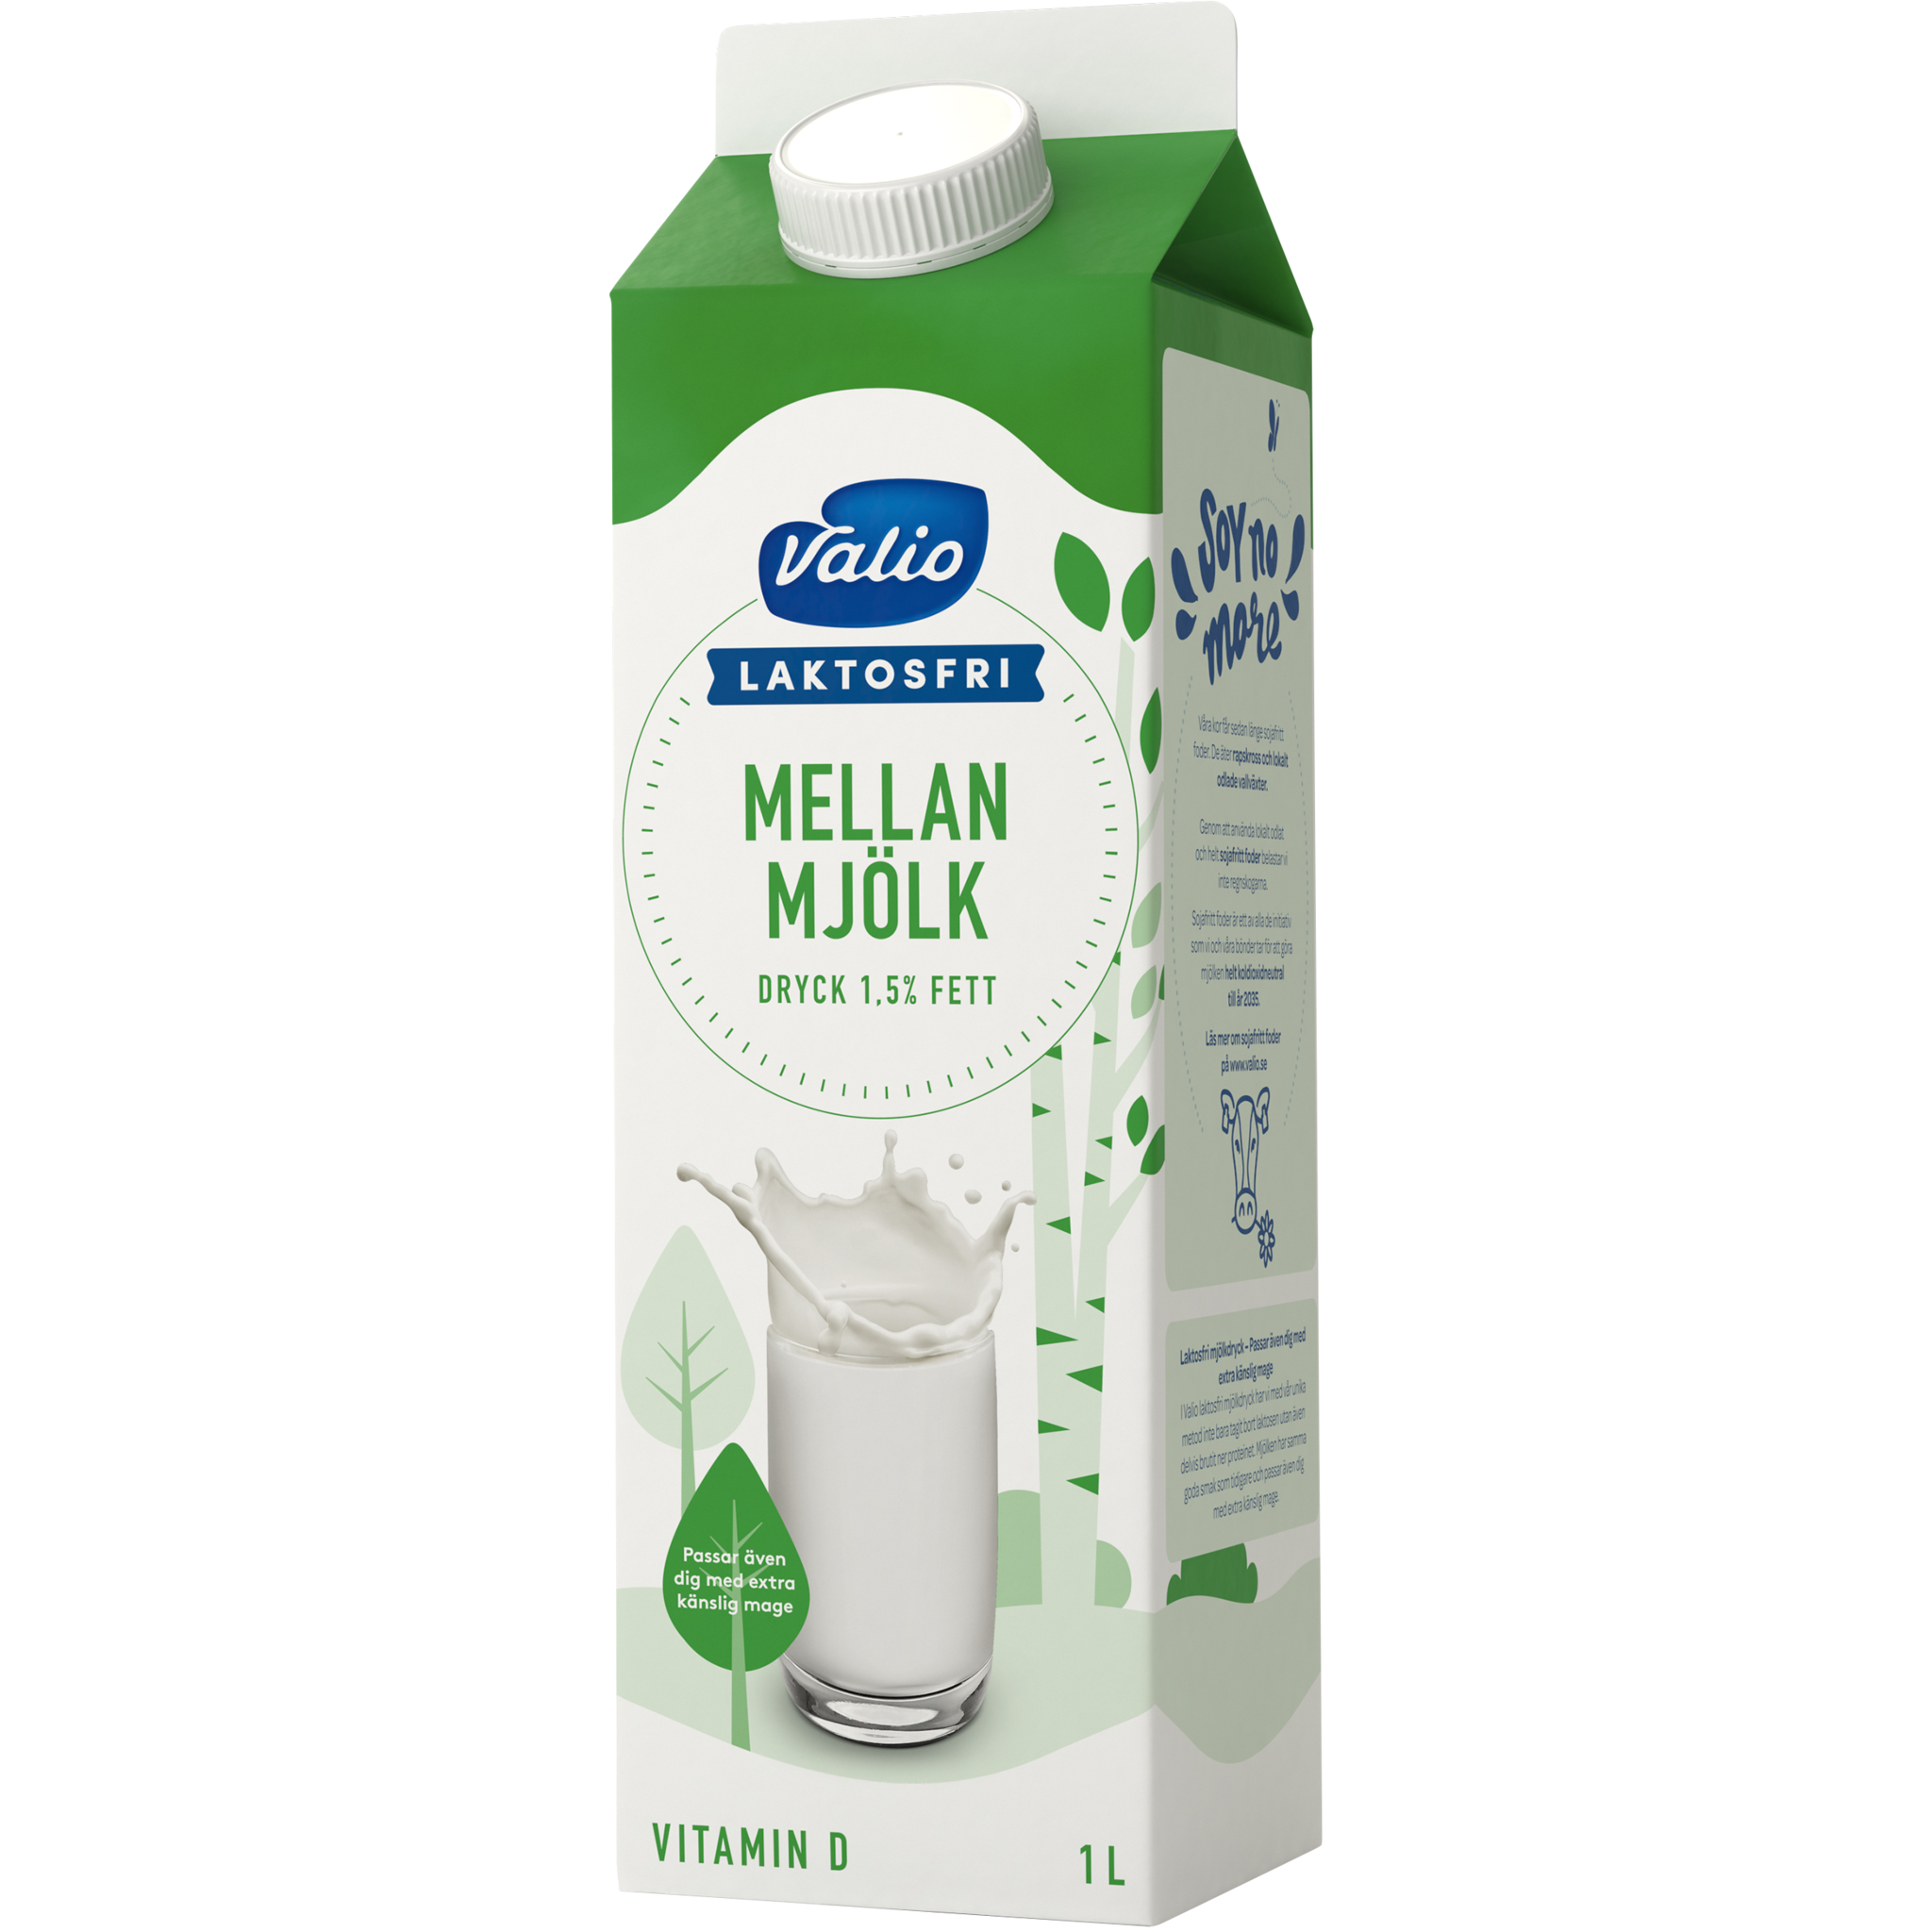 Valio Laktosfri Mellanmjölkdryck | Valio